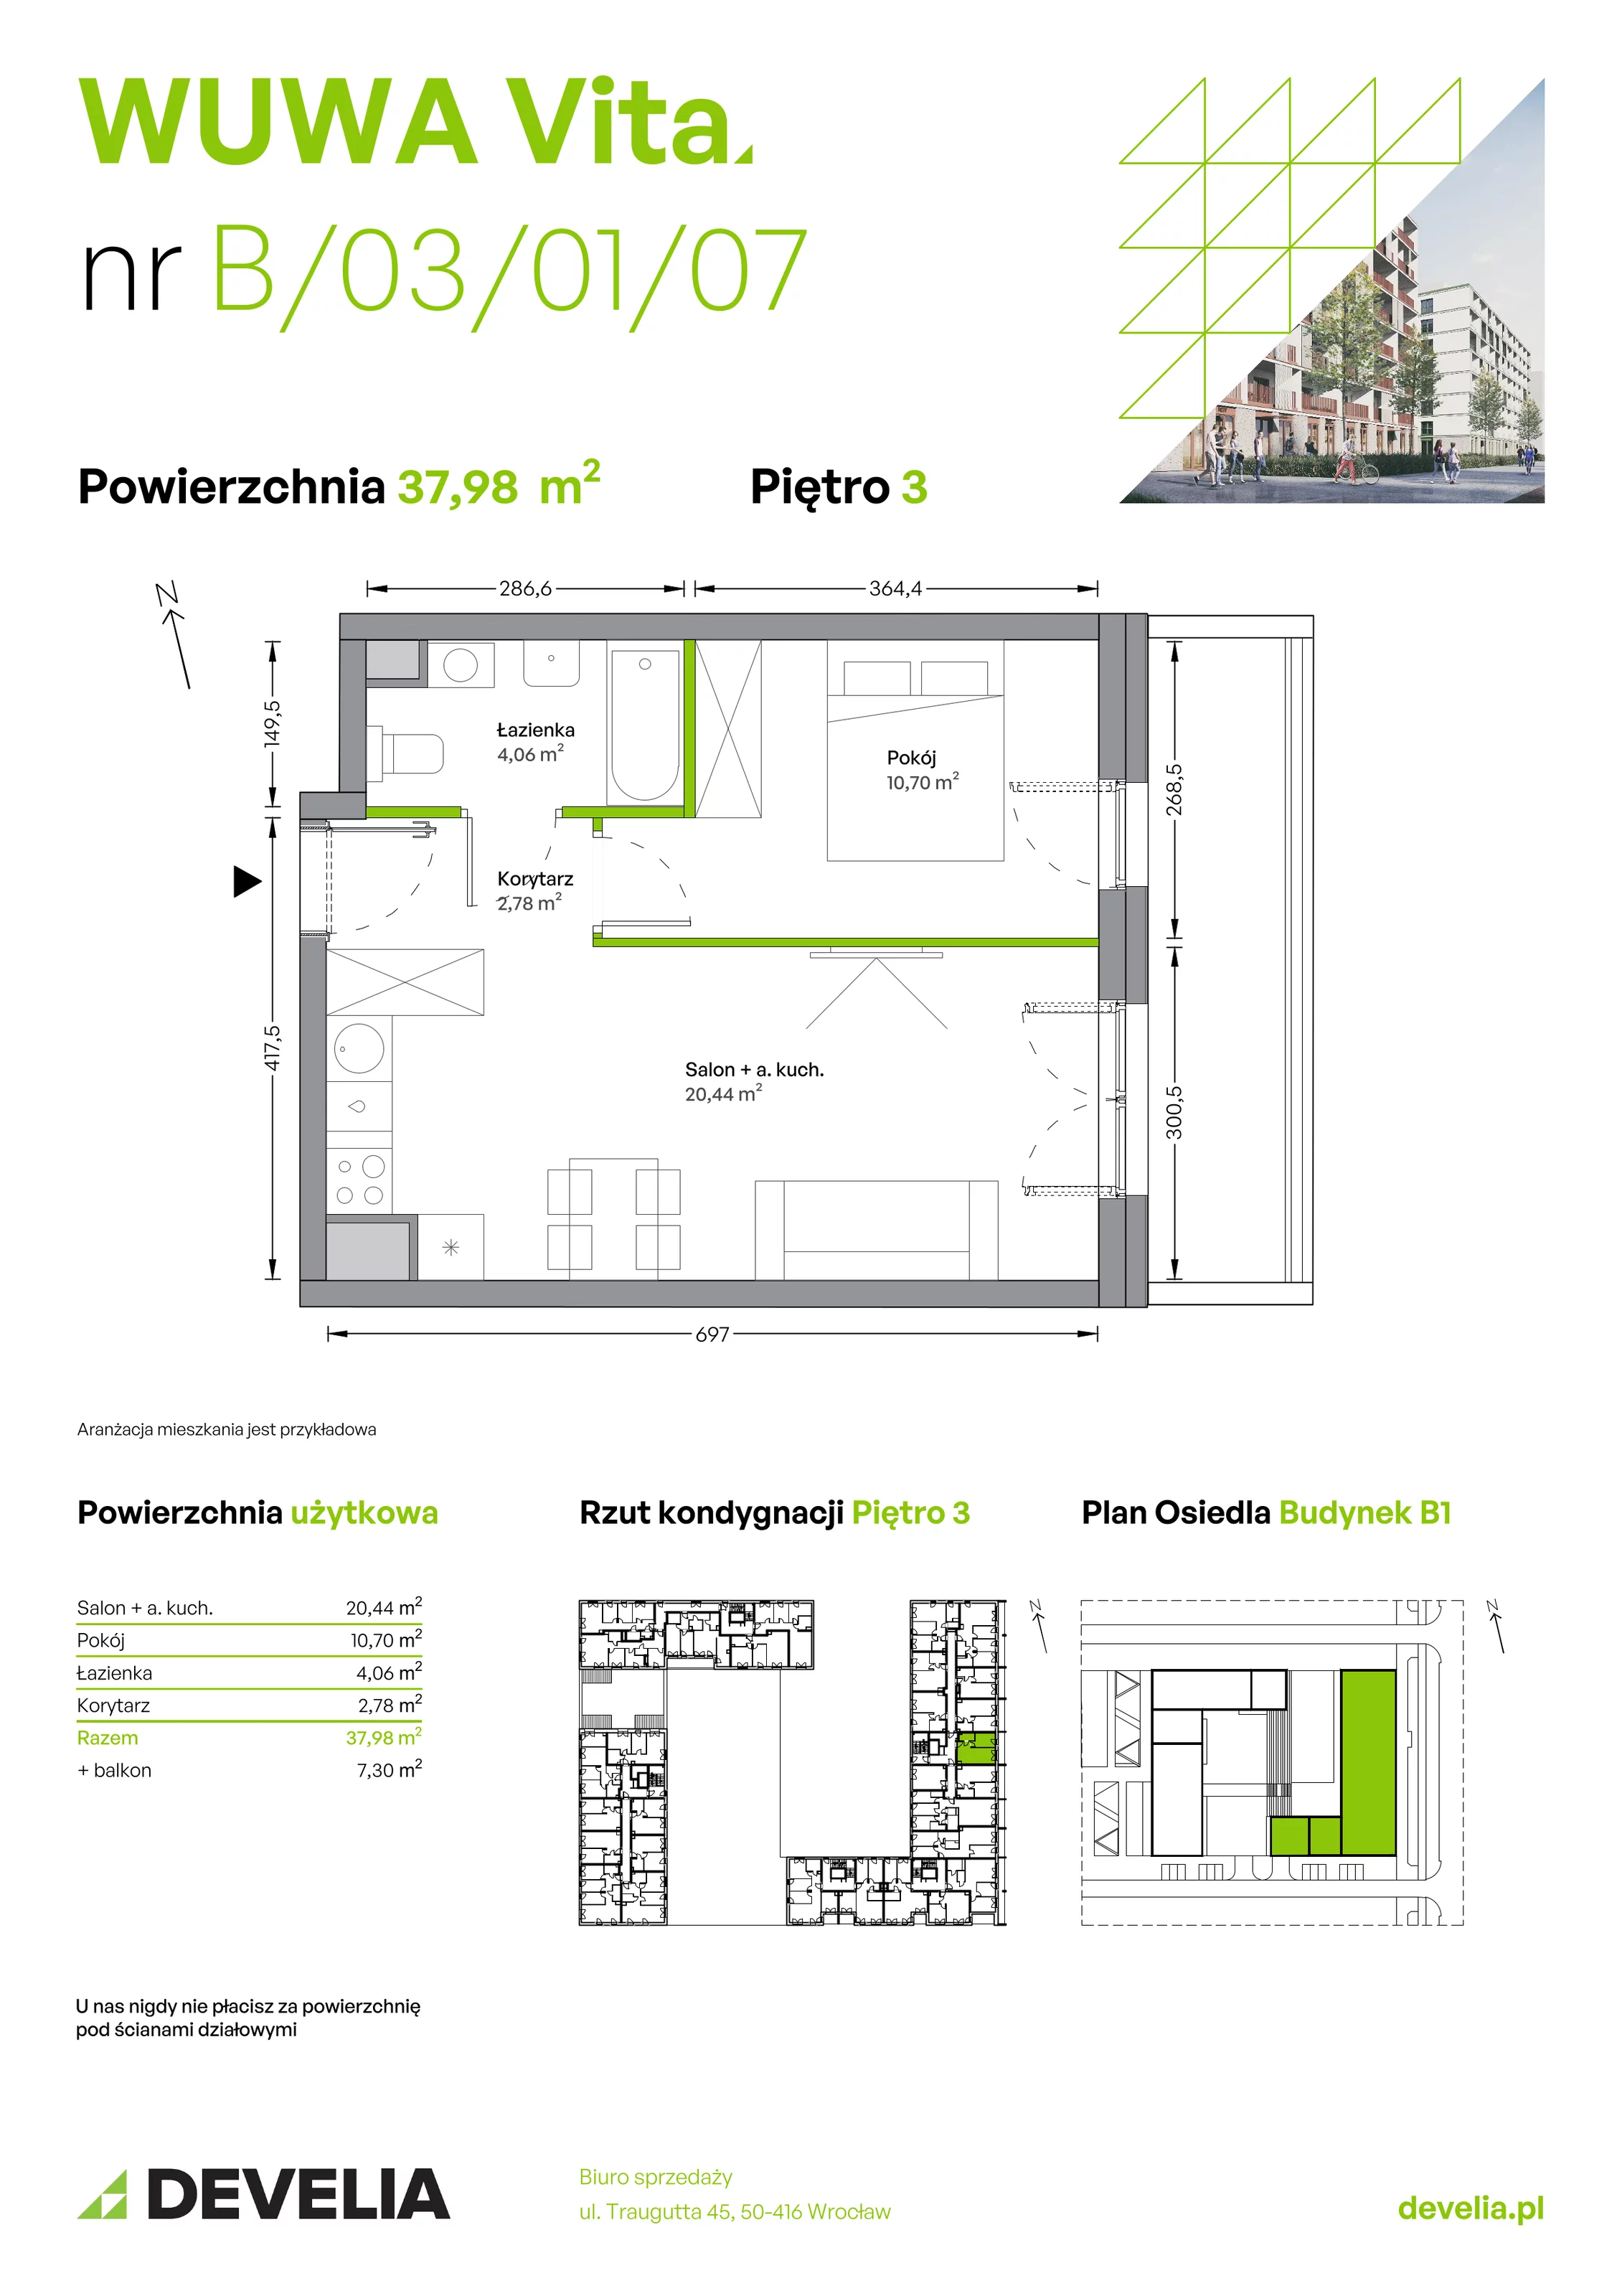 Mieszkanie 37,98 m², piętro 3, oferta nr B.03.01.07, WUWA Vita, Wrocław, Żerniki, Fabryczna, ul. Tadeusza Brzozy